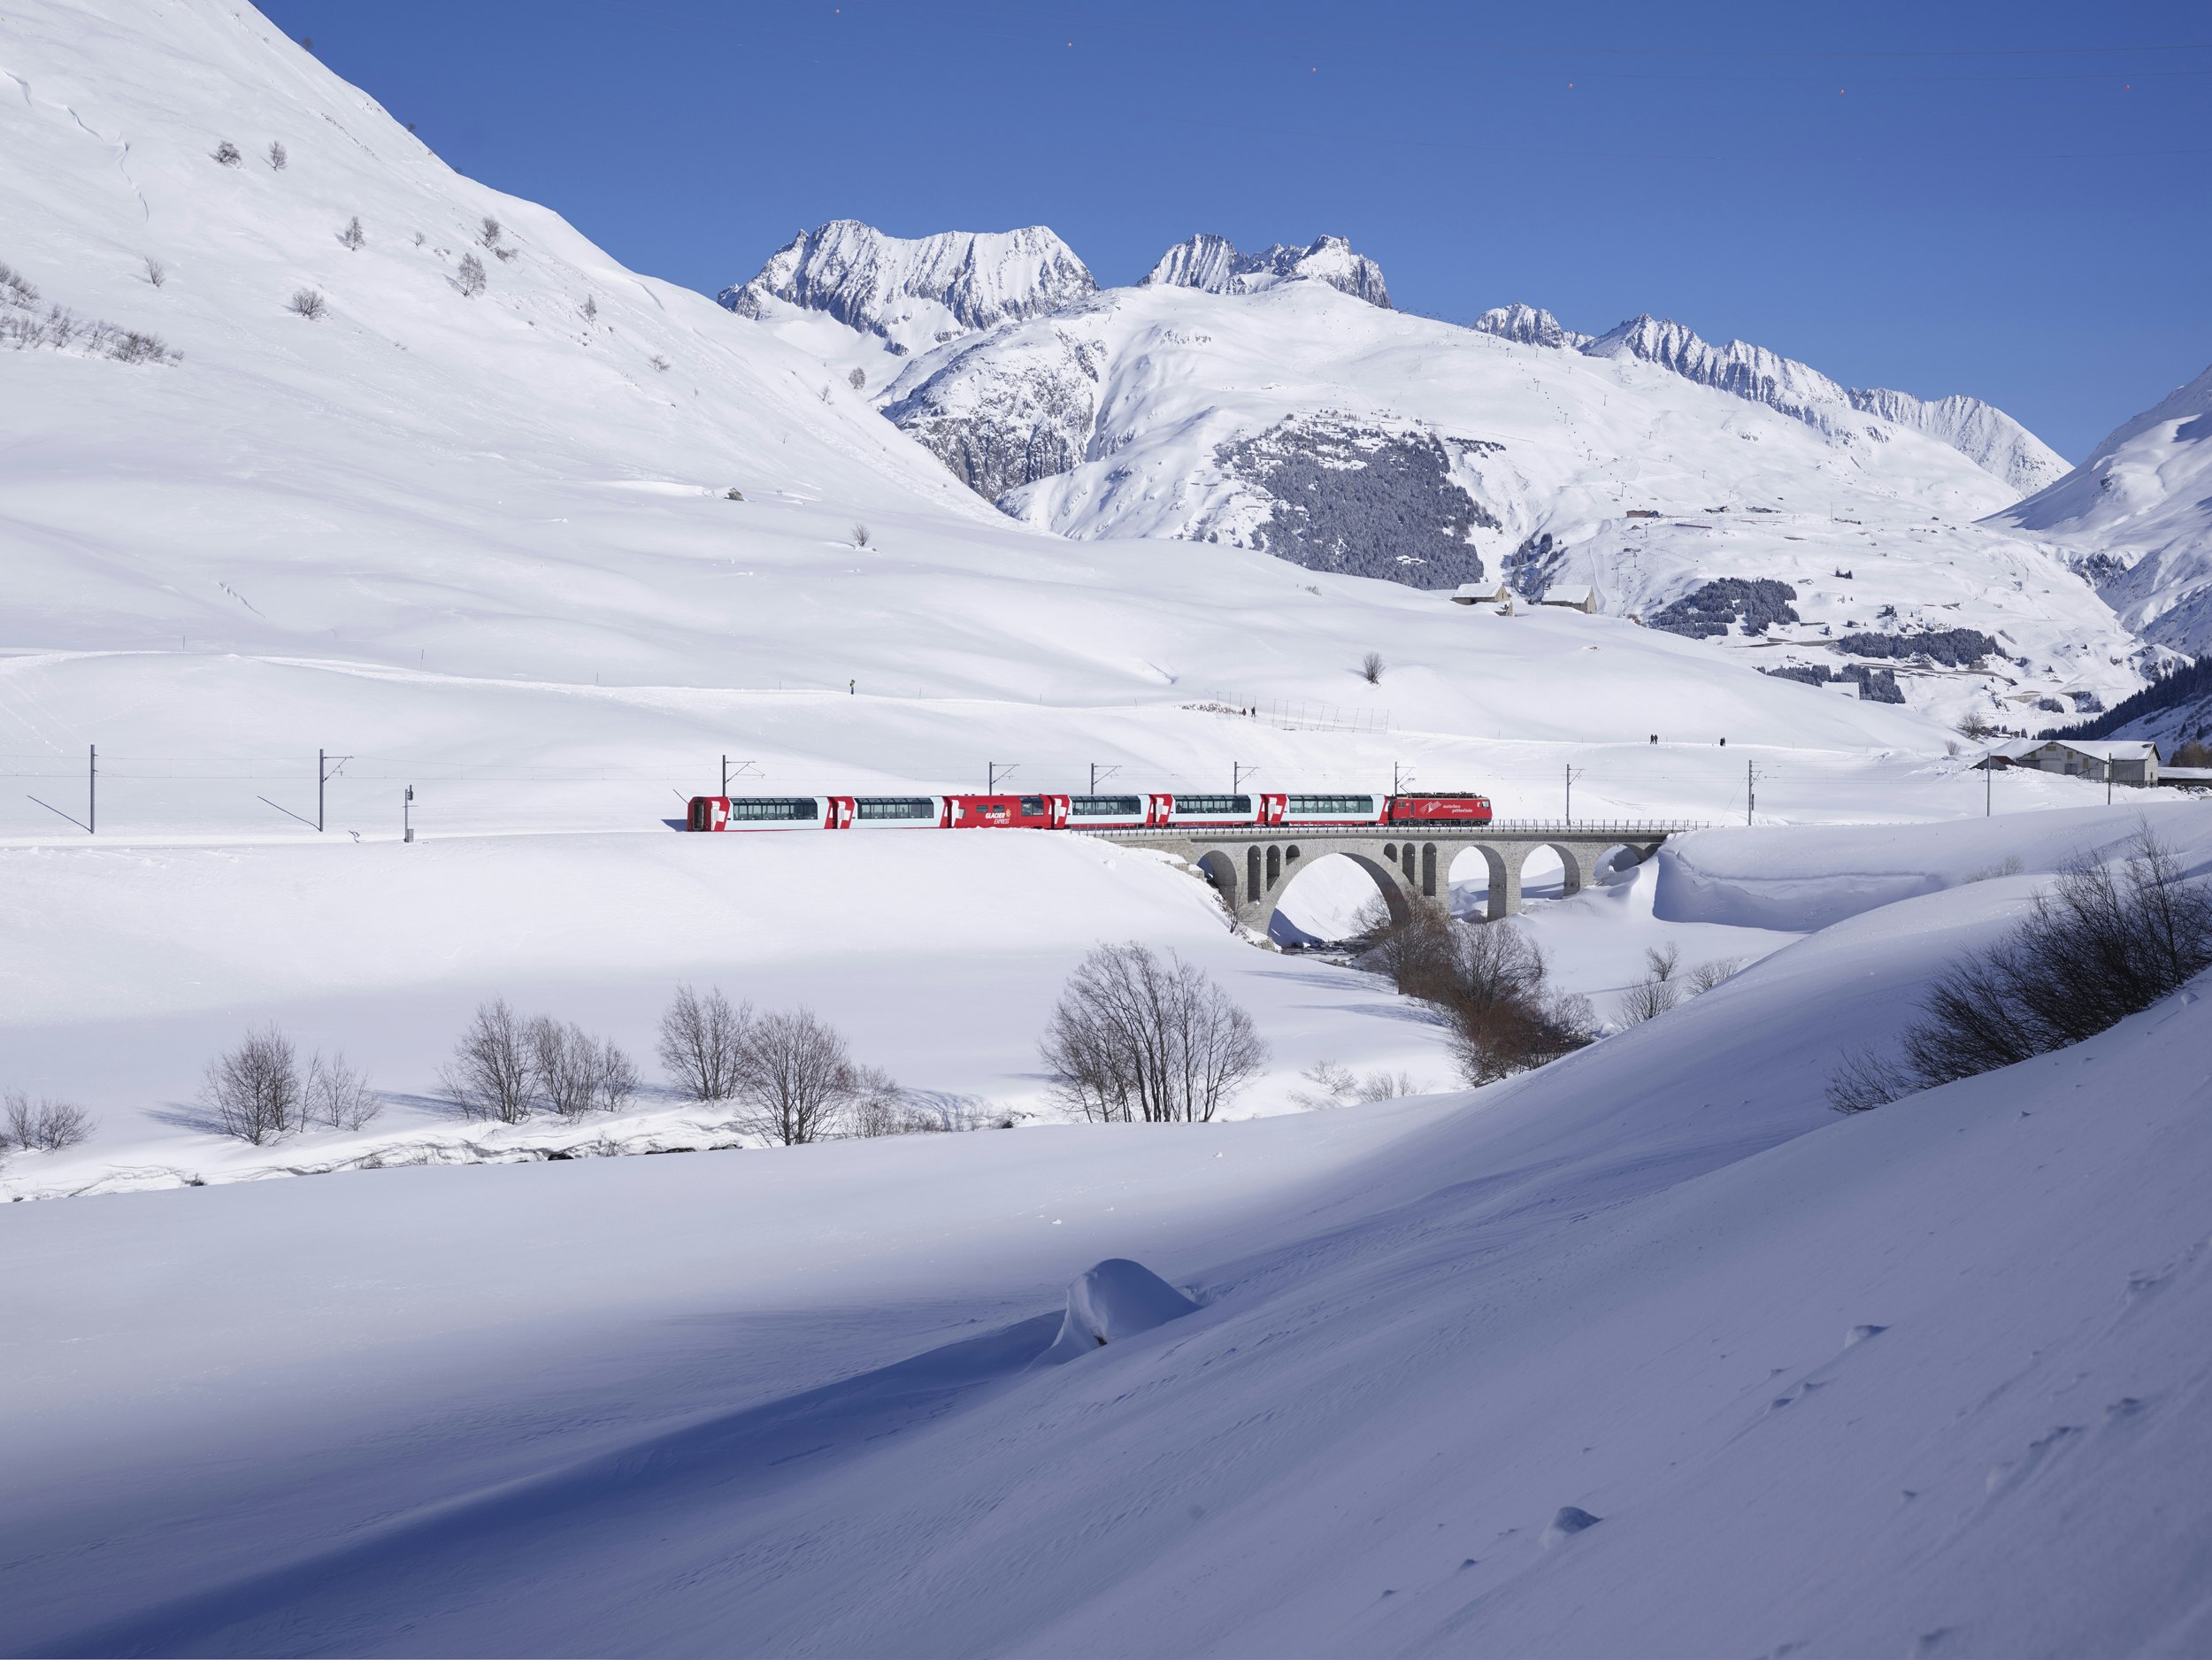 Glacier Express Kurzreise<br>2 Tage / 1 Nacht<br>ab CHF 775.- für 2 Personen